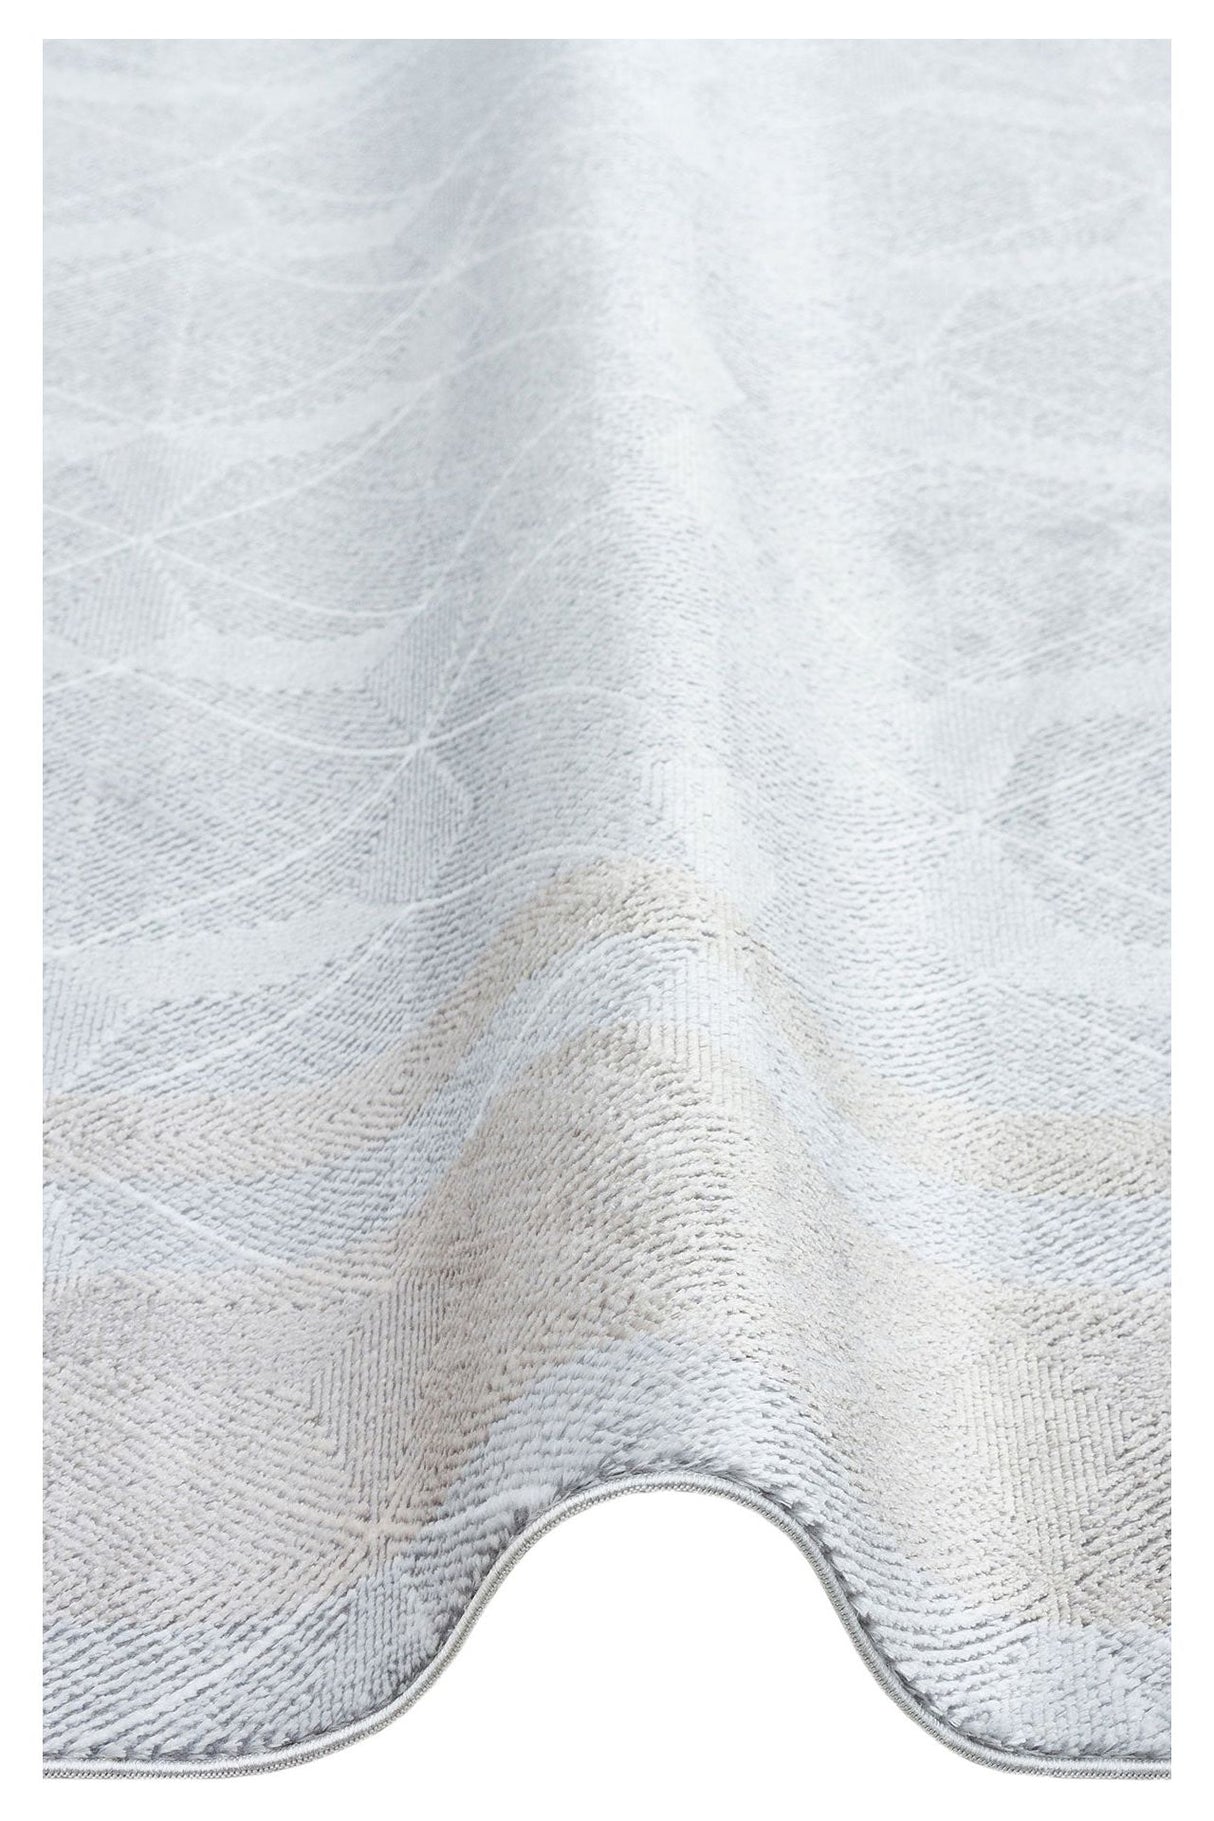 #Turkish_Carpets_Rugs# #Modern_Carpets# #Abrash_Carpets#St 103 Grey Beige